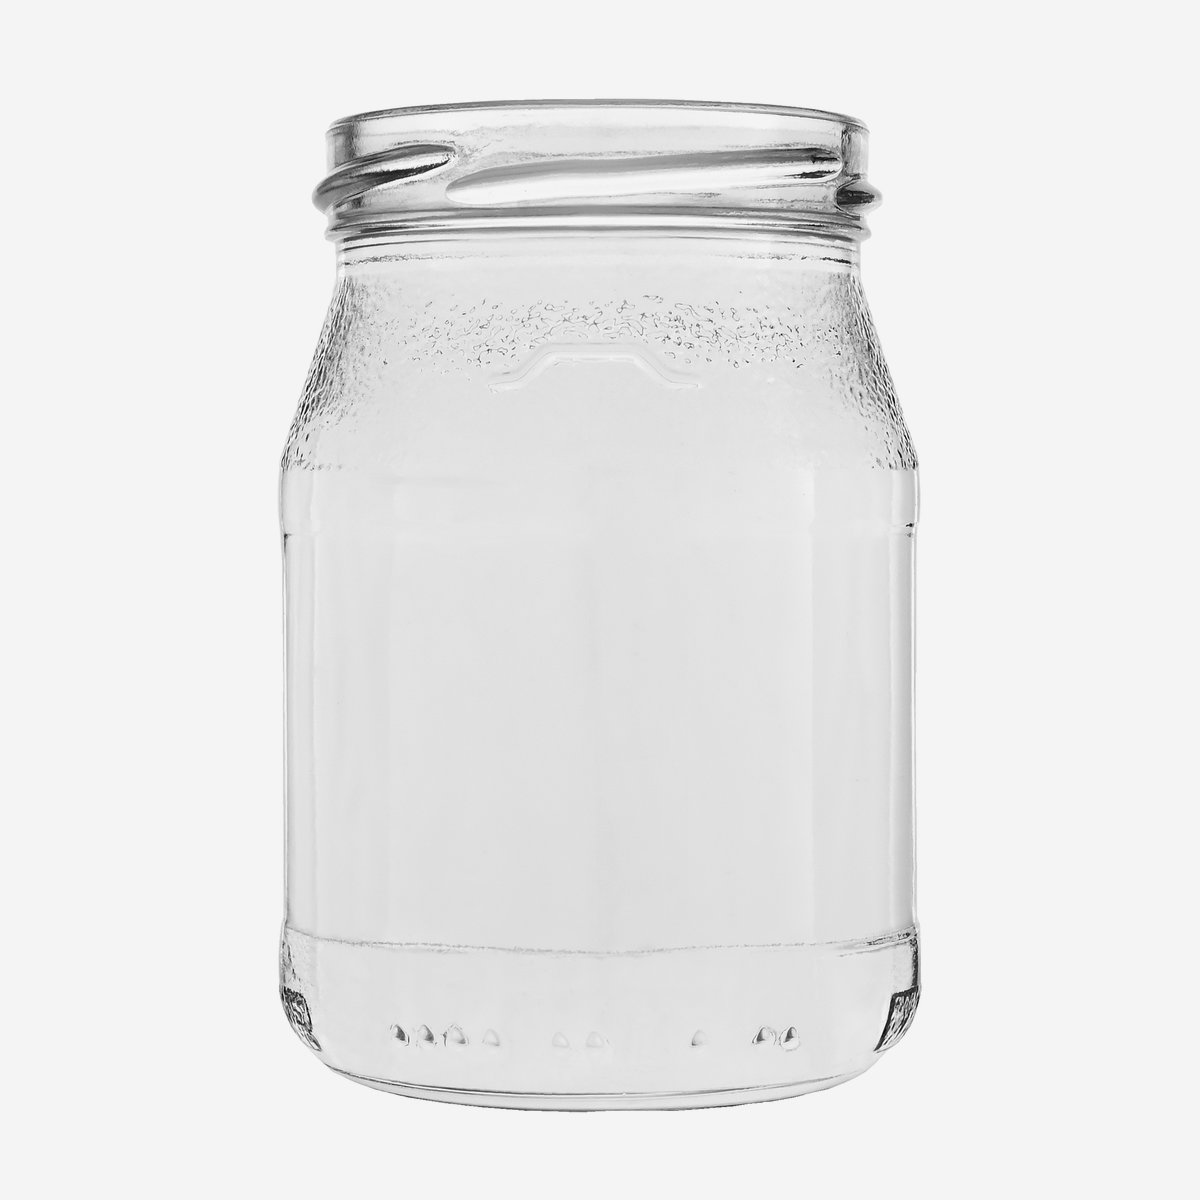 1 Glas 212 ml Ersatz Glas für Joghurtbereiter Joghurt Glas Deckel weiß 